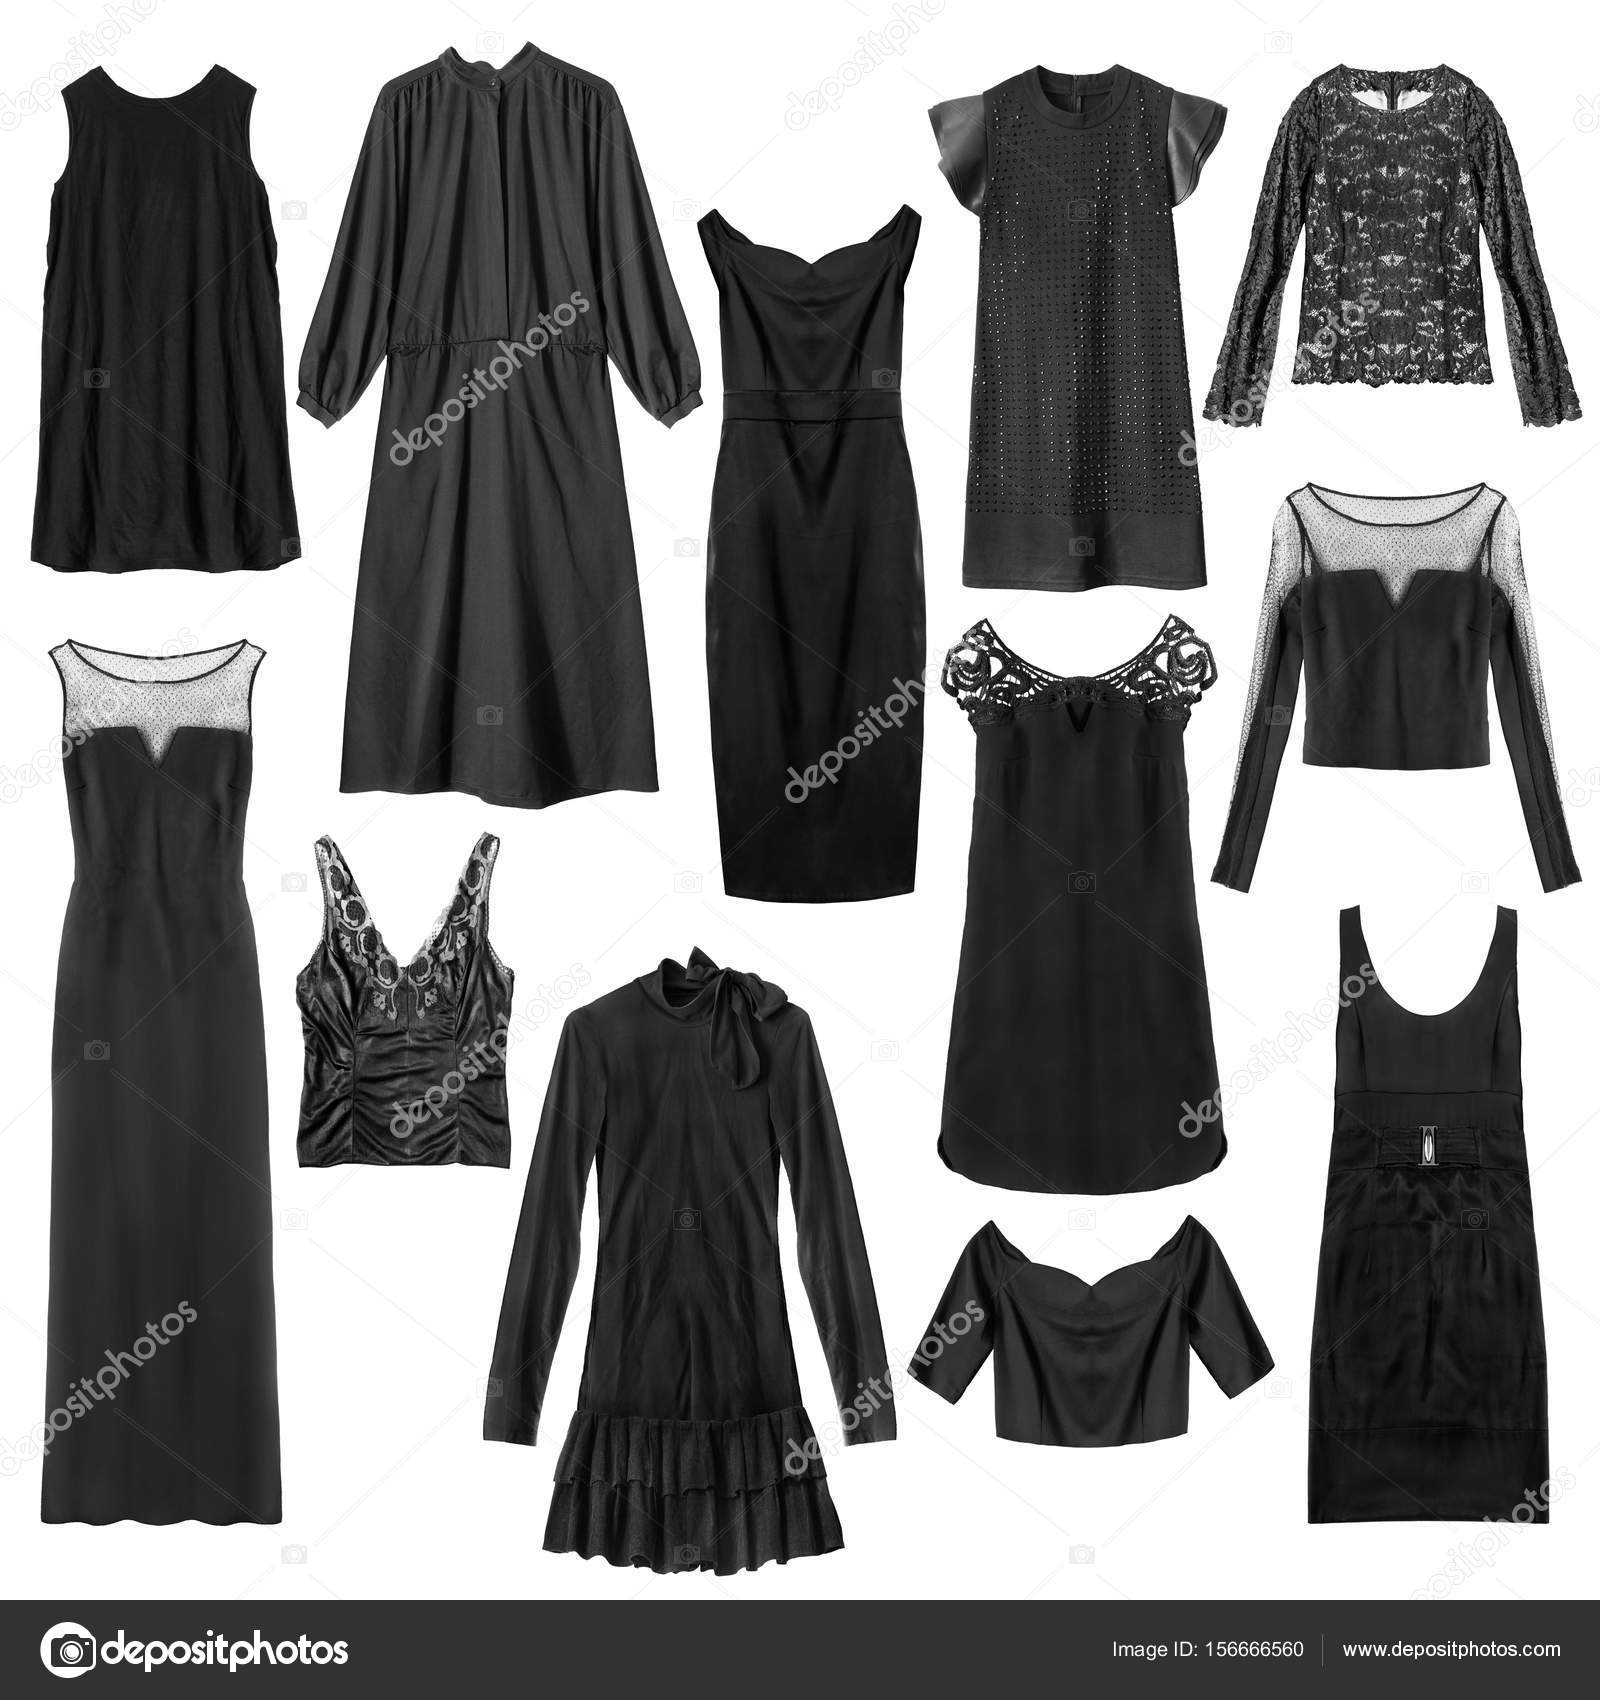 black clothes